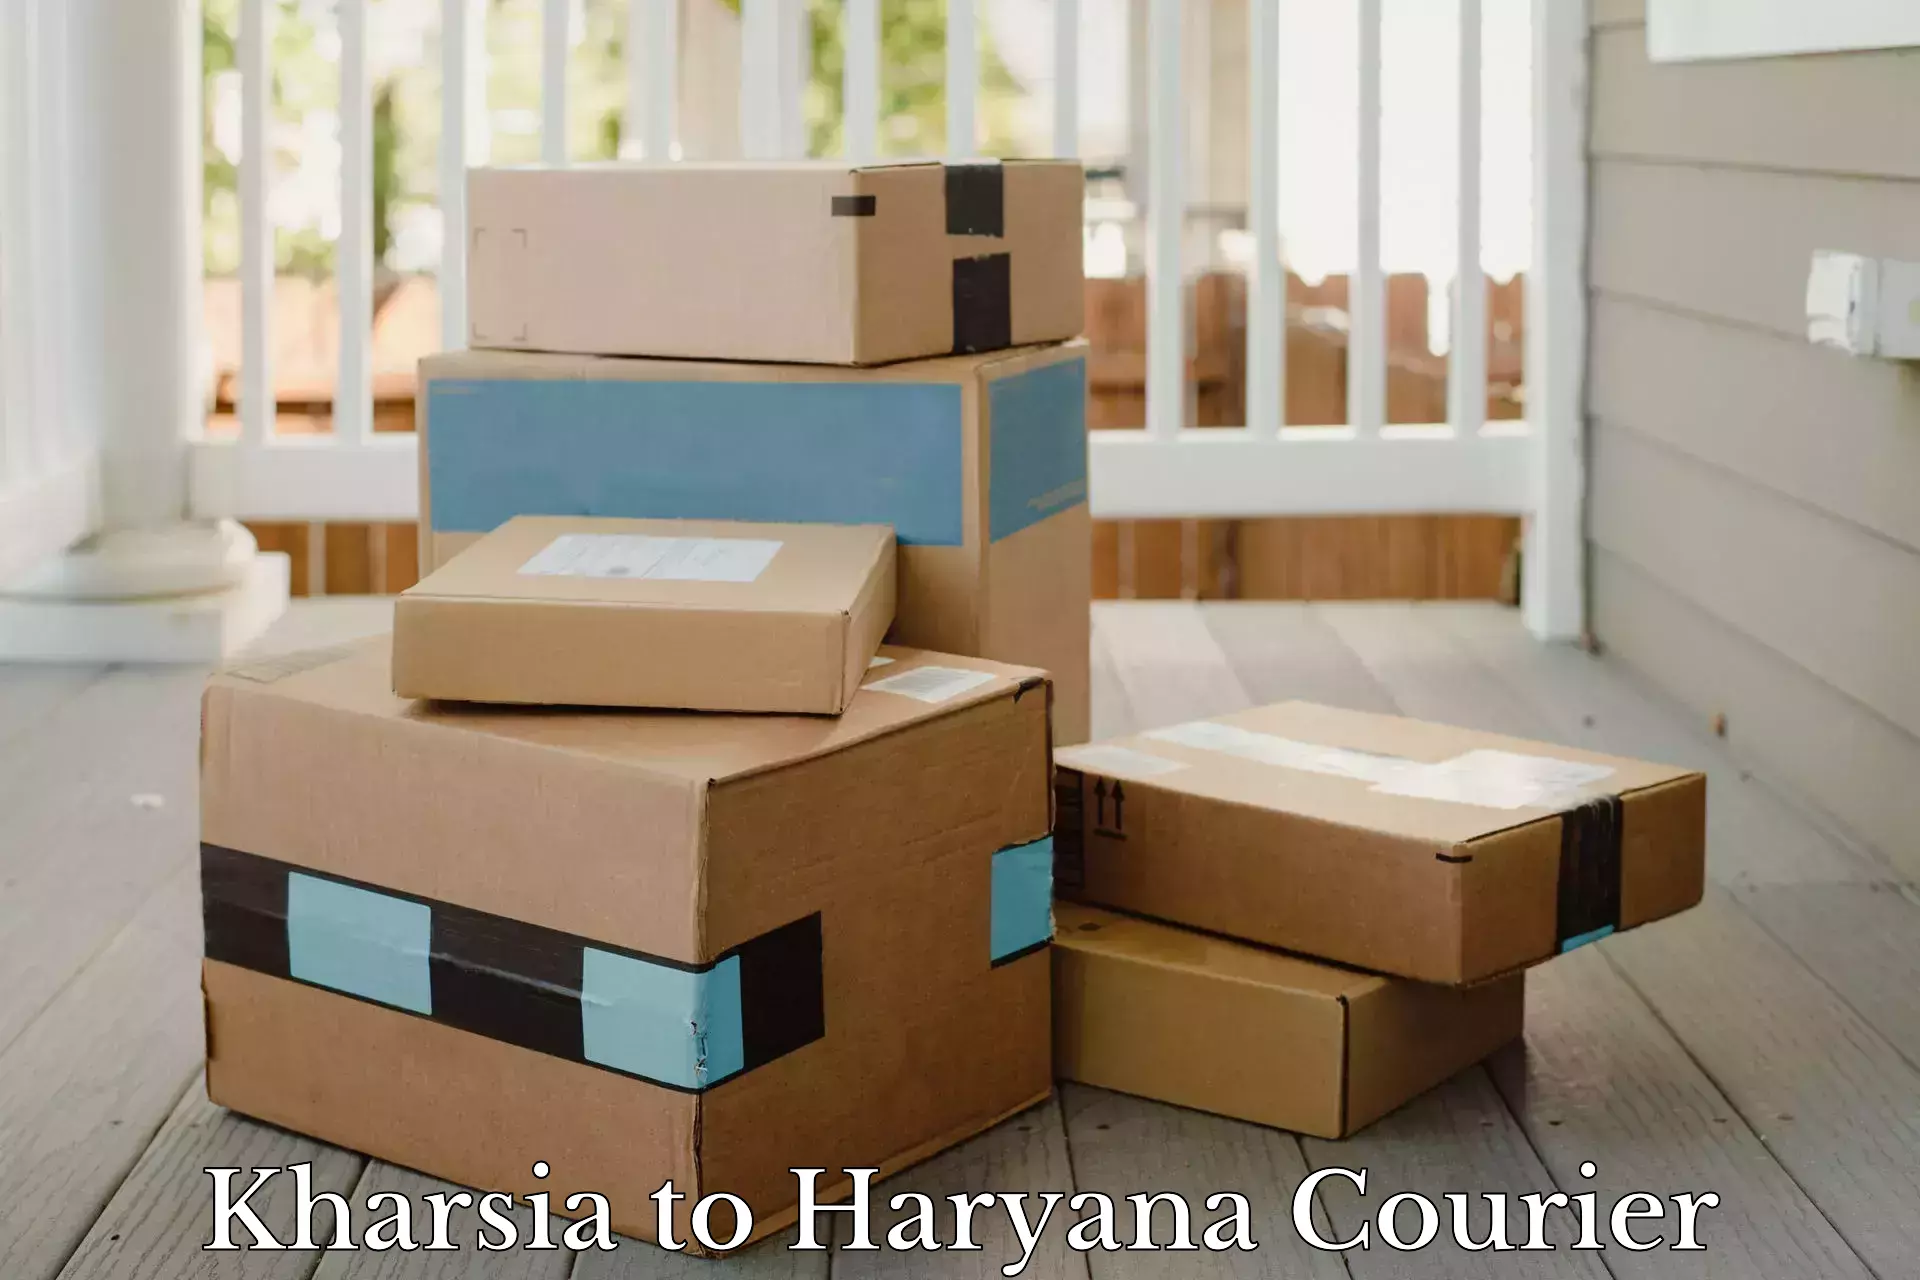 Pharmaceutical courier Kharsia to Haryana